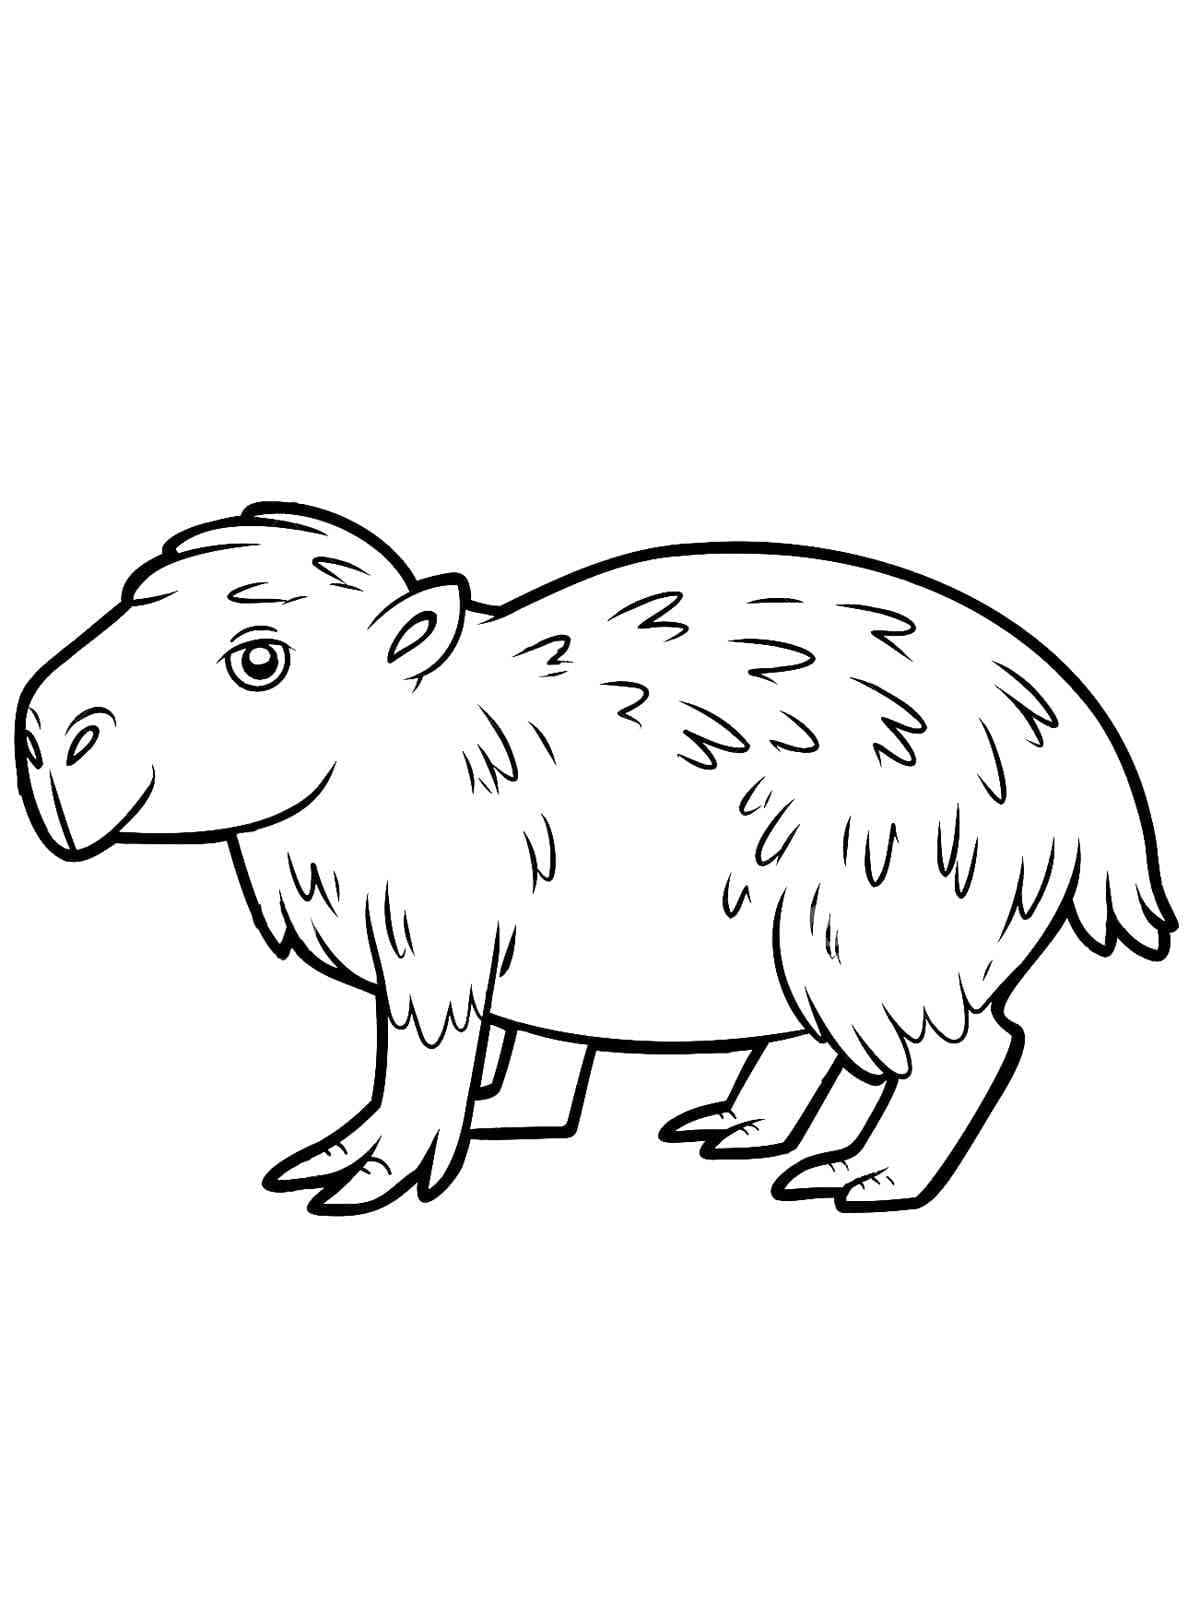 Joli Capybara coloring page